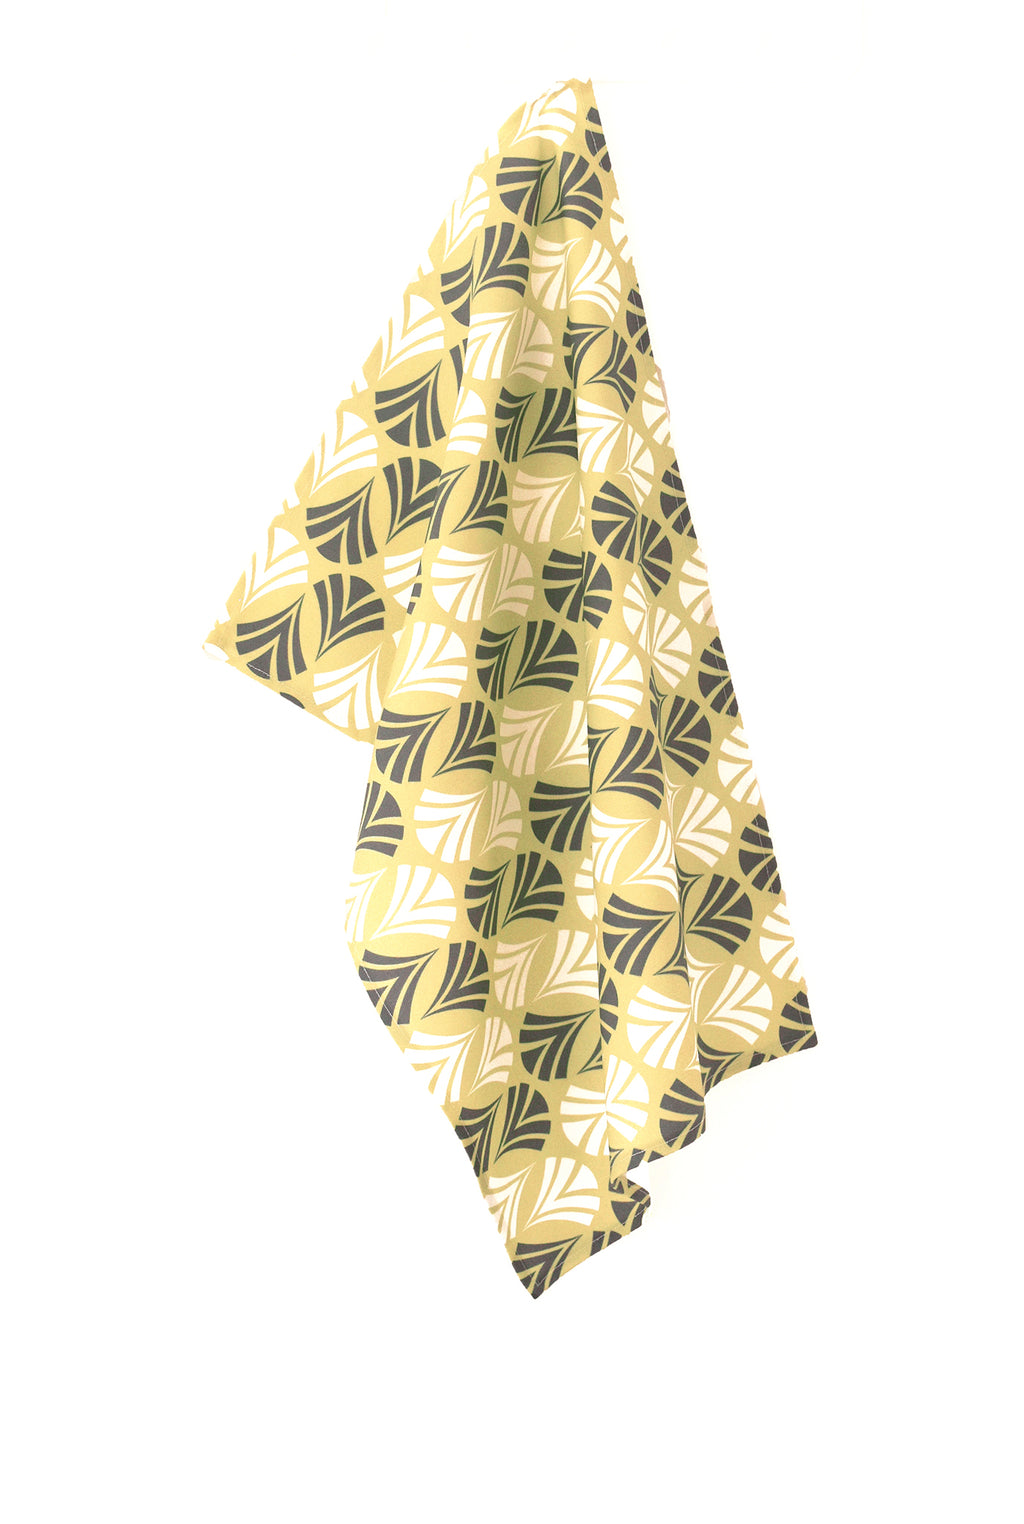 Waltz Linen Cotton Tea Towel (18.5x25) – Moss Green